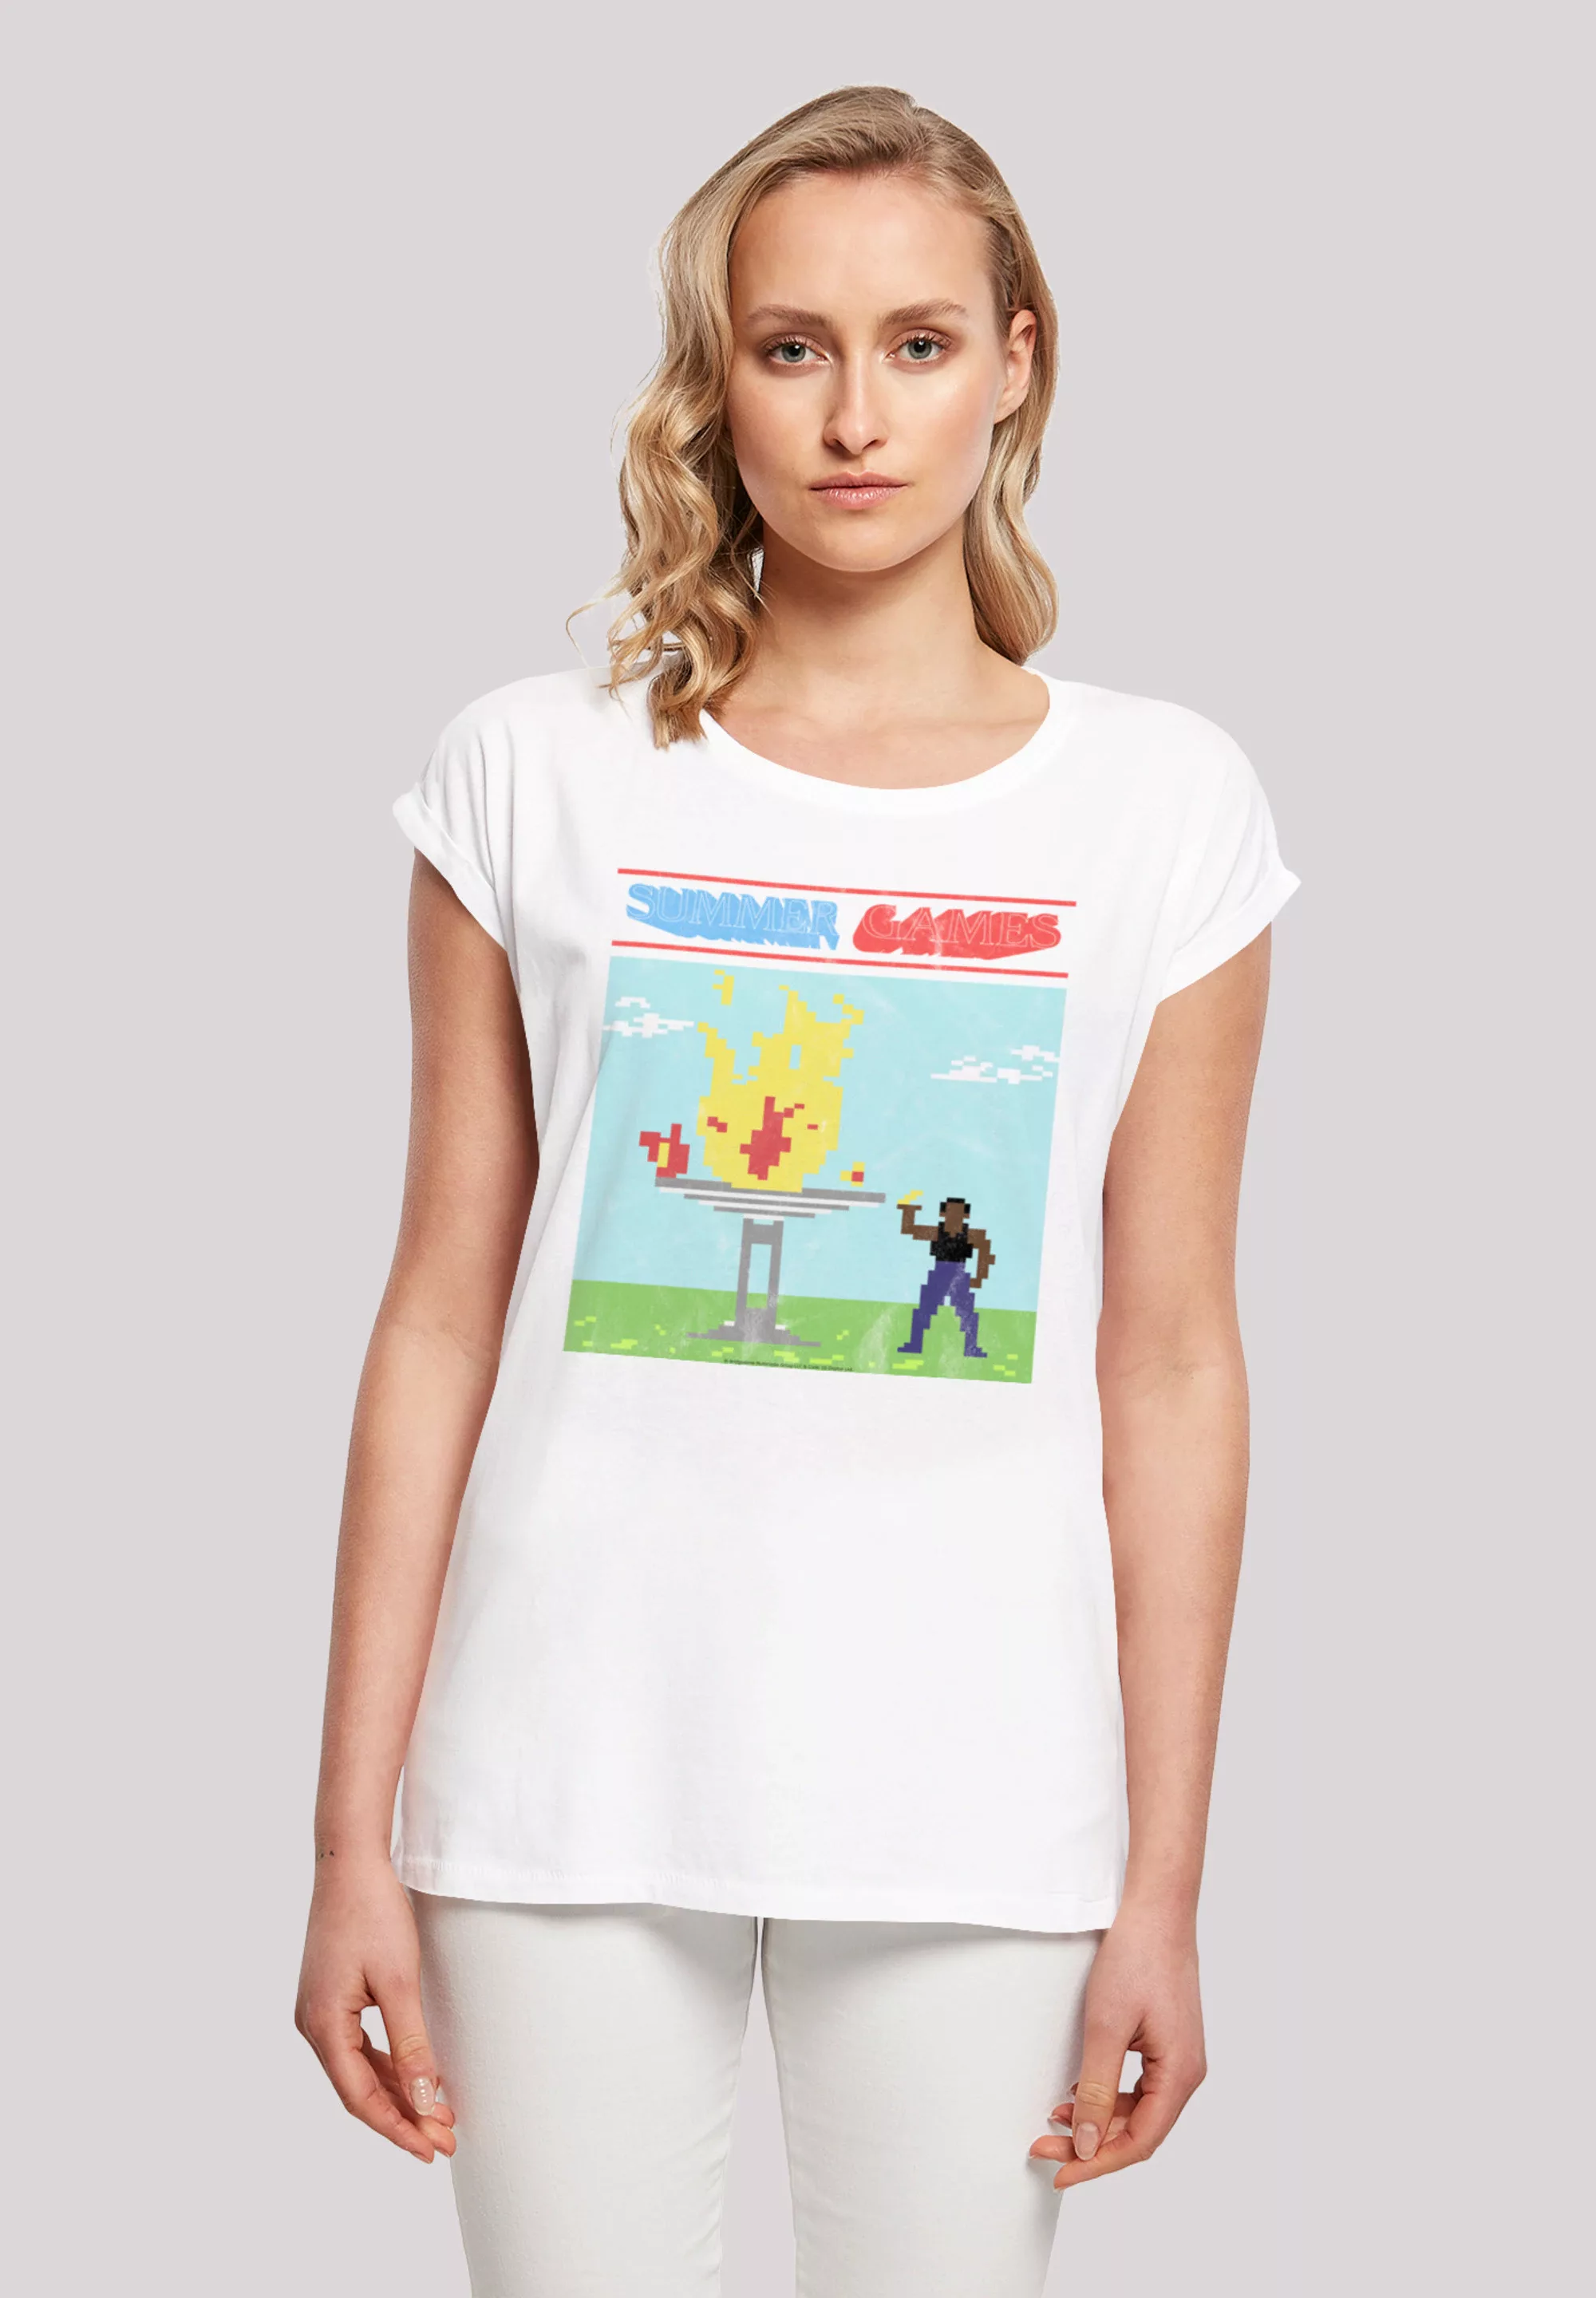 F4NT4STIC T-Shirt "Retro Gaming Summer Games", Print günstig online kaufen